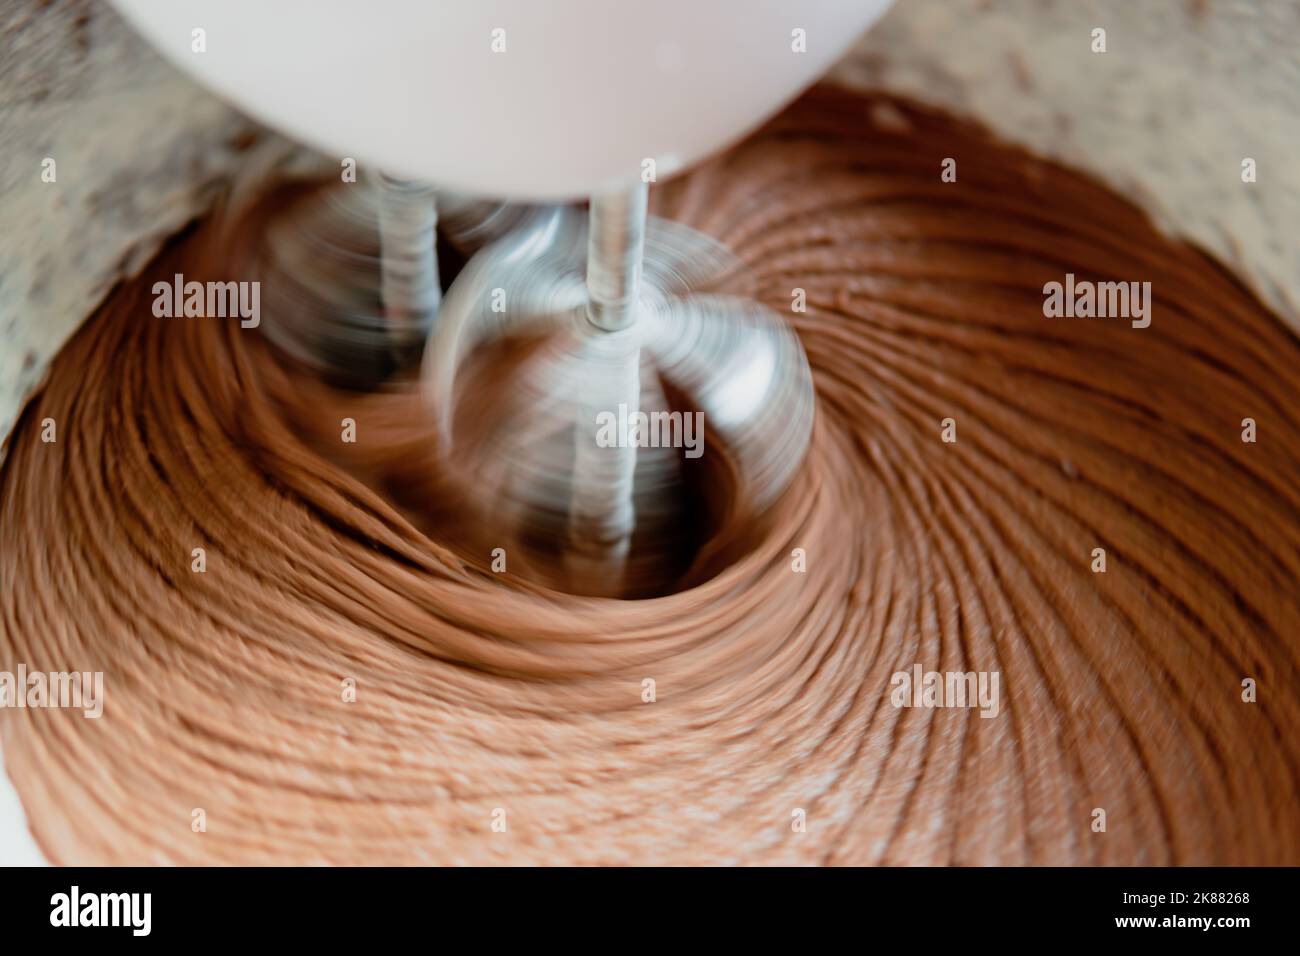 Nahaufnahme des Schokoladenkuchen-Teigs in einer Rührschüssel mit sich drehenden Quirlen. Stockfoto